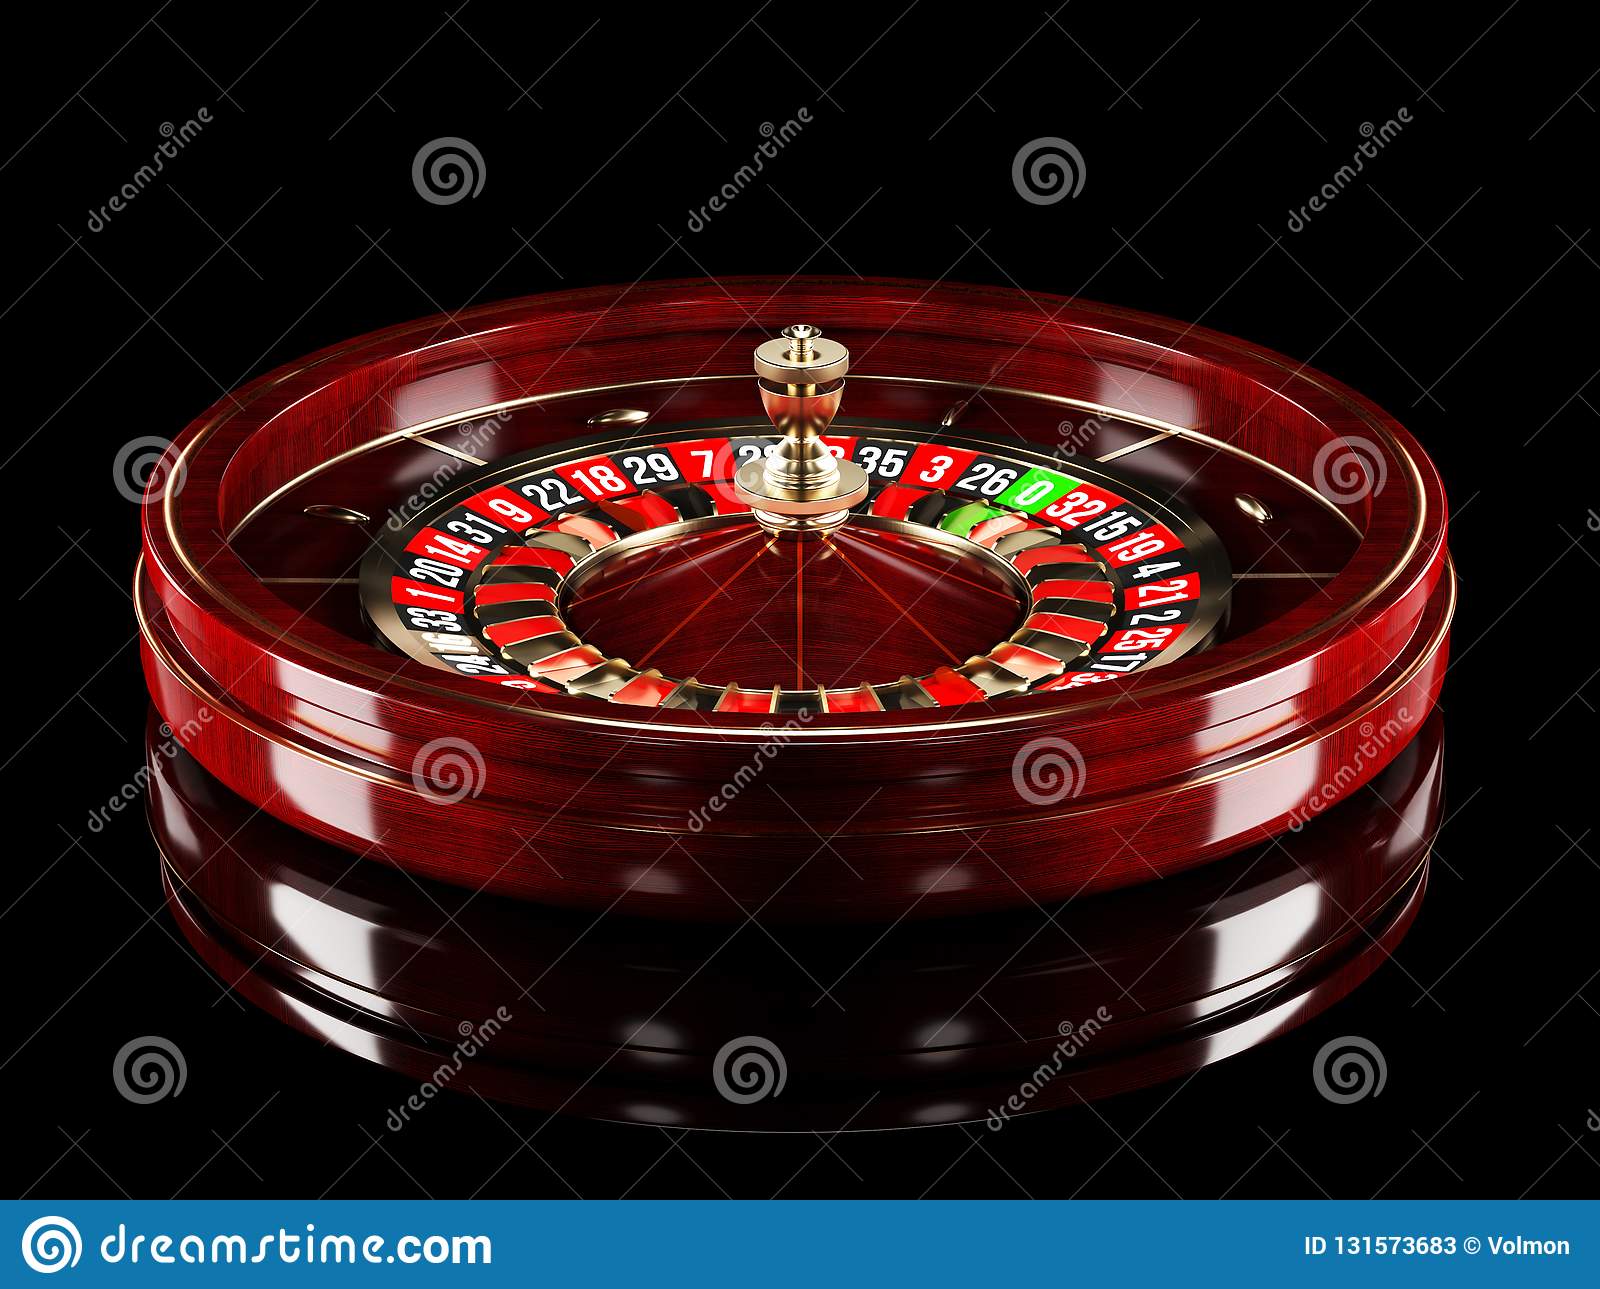 Slot machine bitcoin 77777 livre